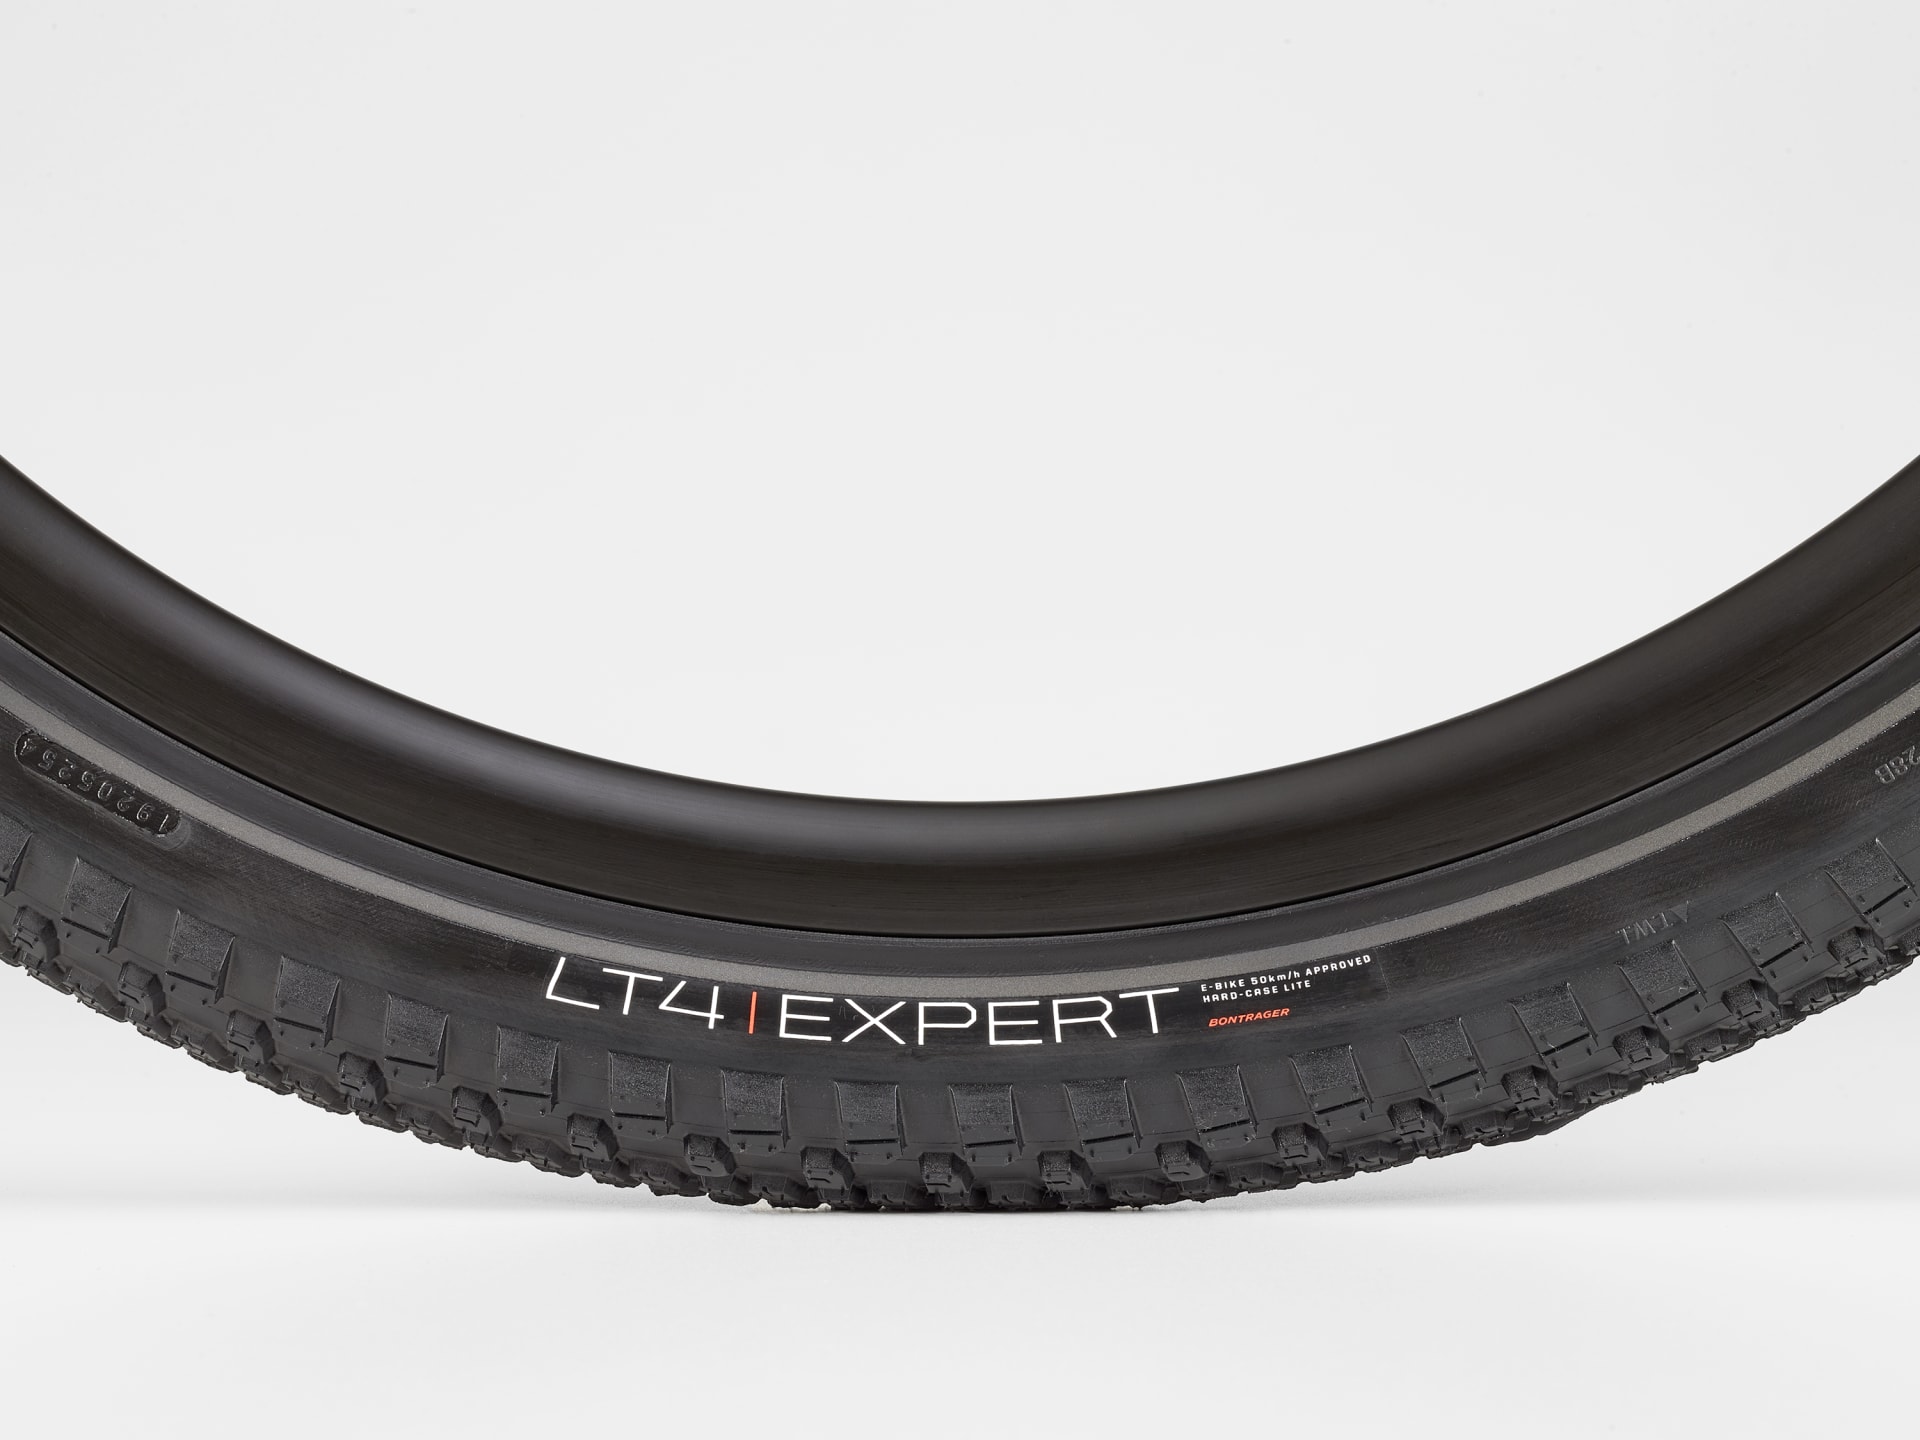 Bontrager LT4 Expert Reflective E-bike Tire